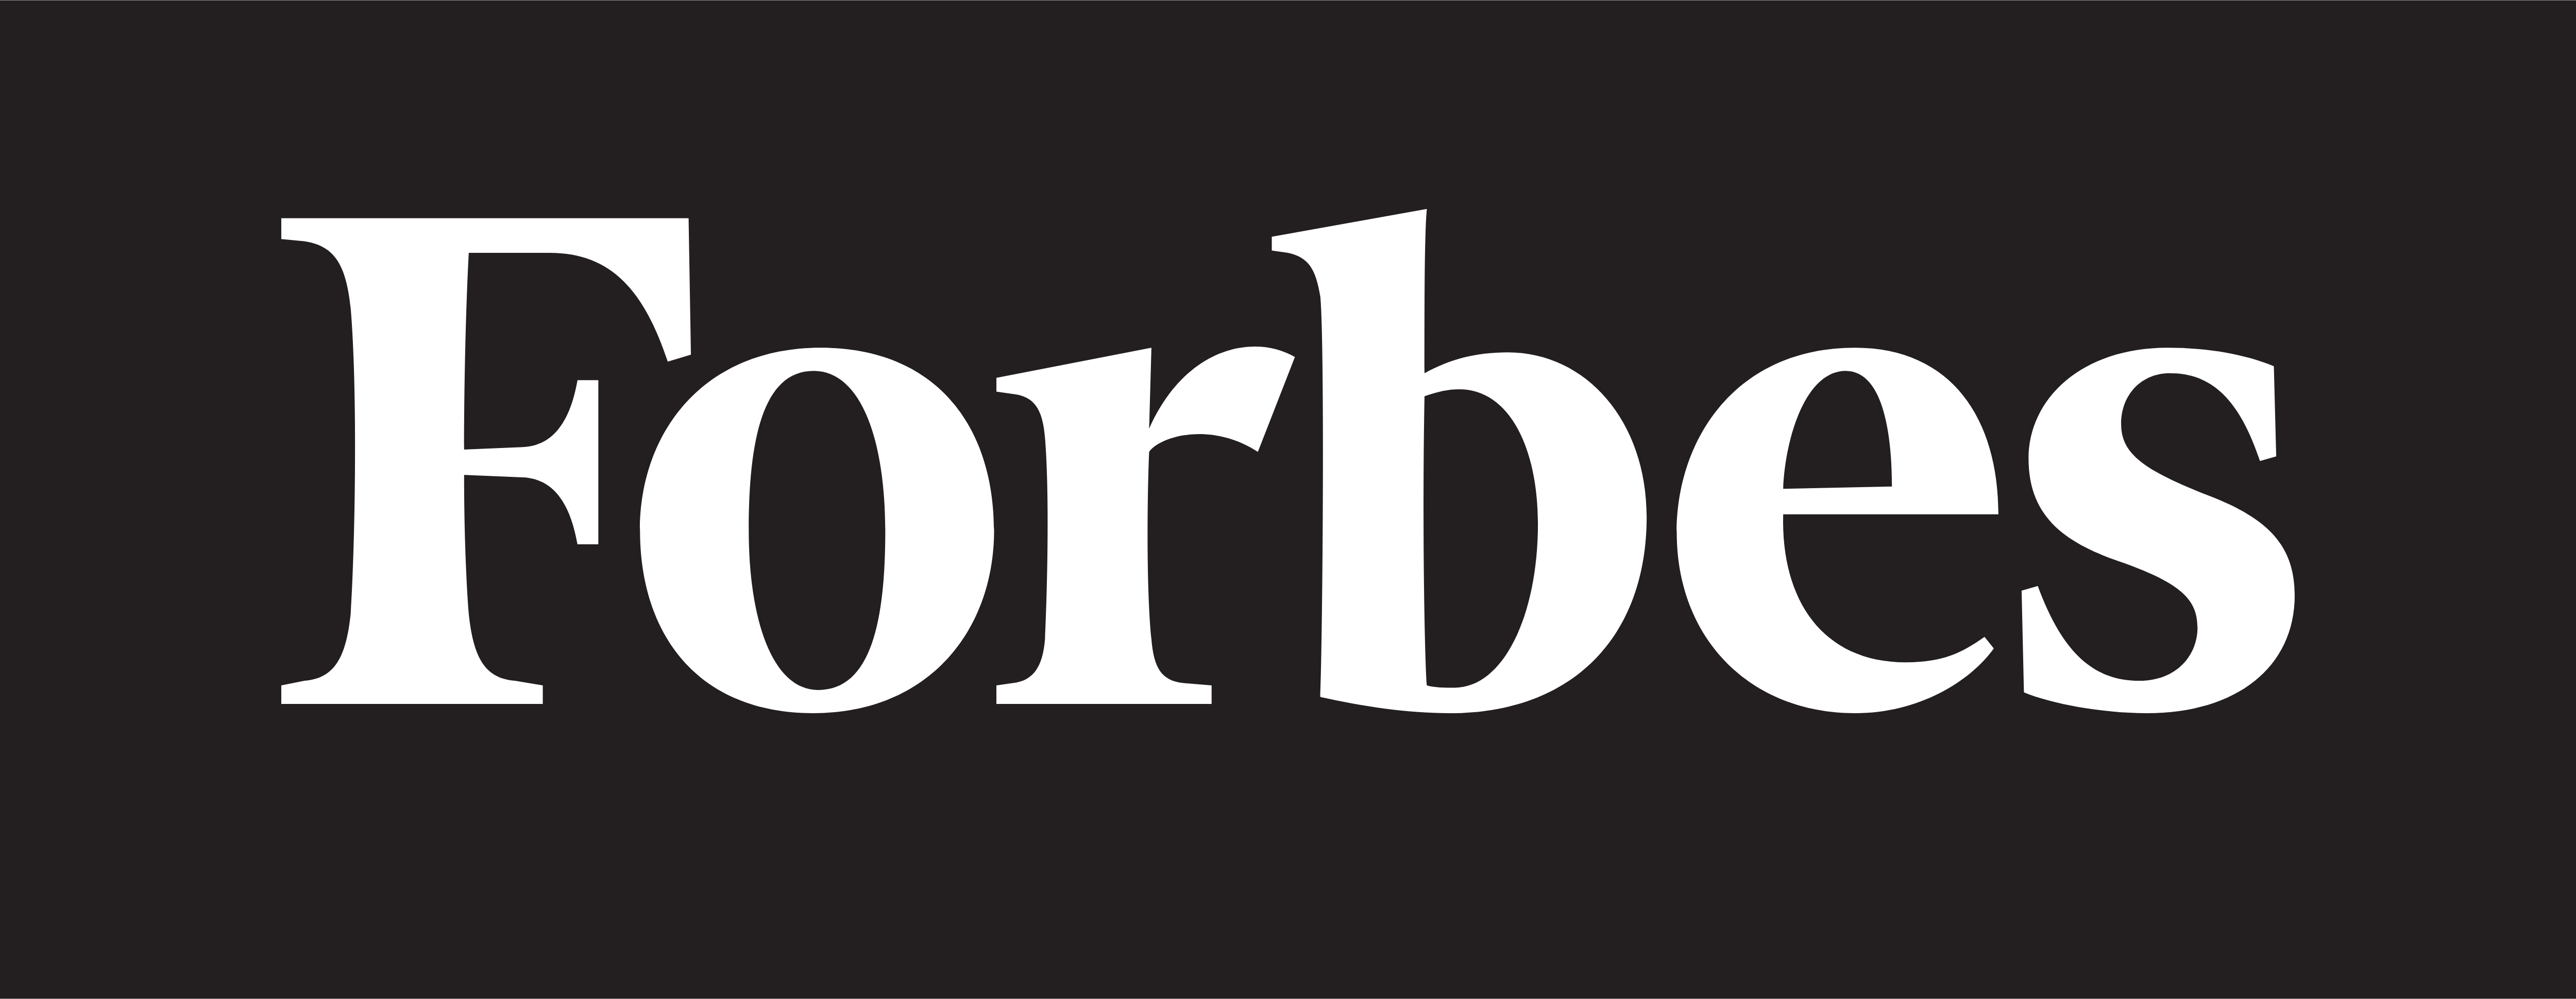 Forbes – Tải xuống logo